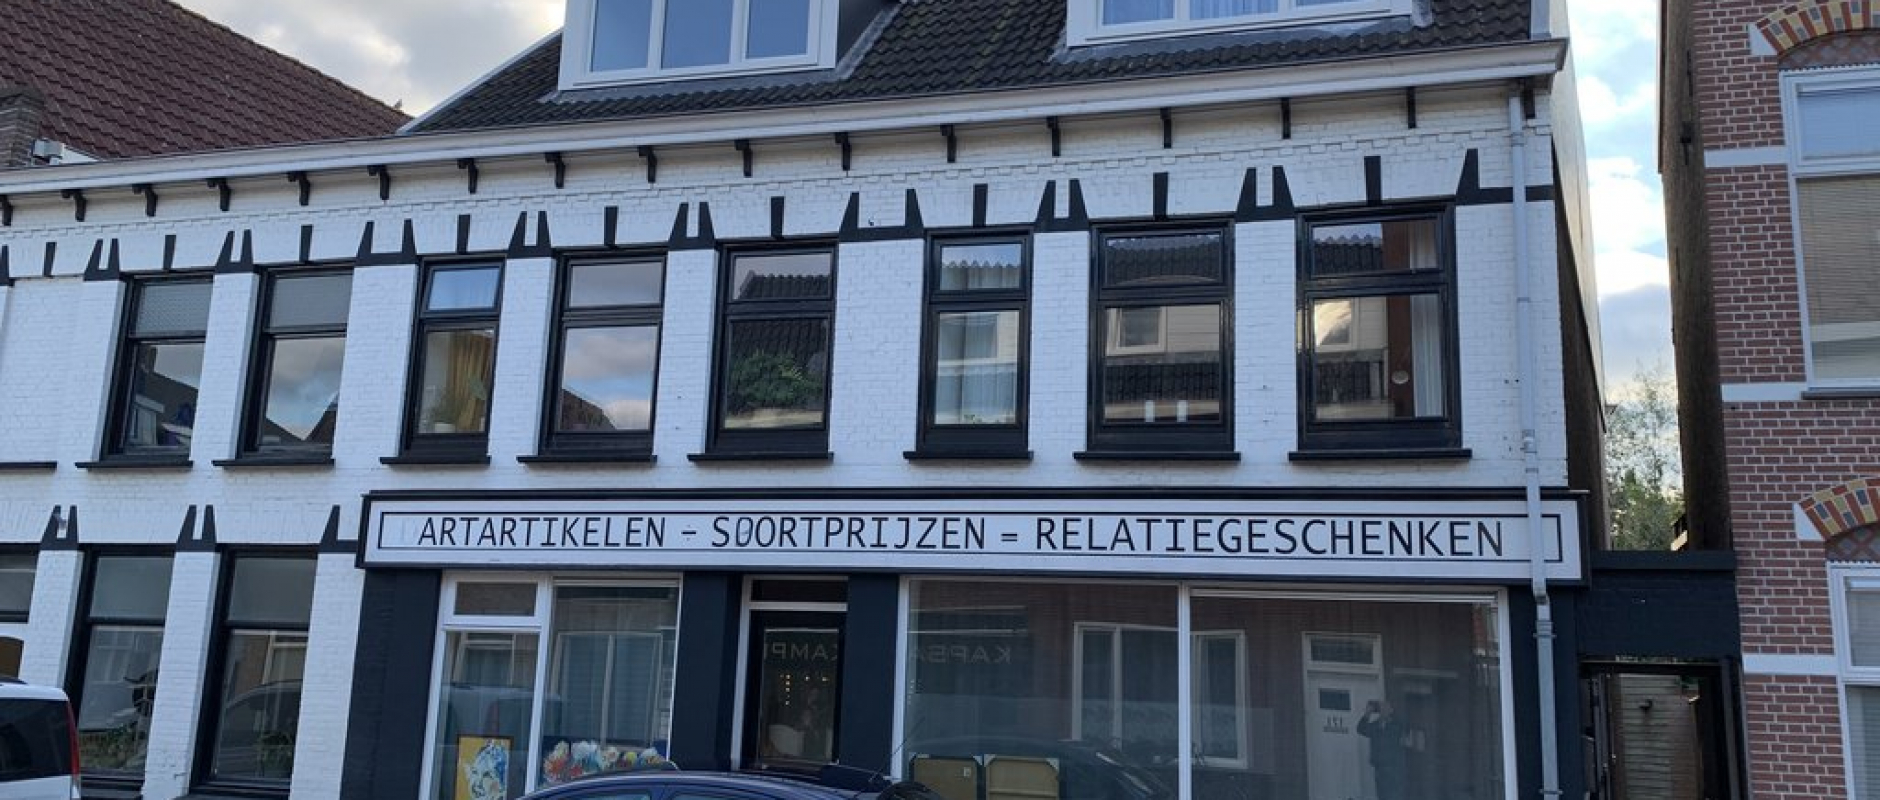 Woning te koop aan de Assendorperstraat 194B te Zwolle